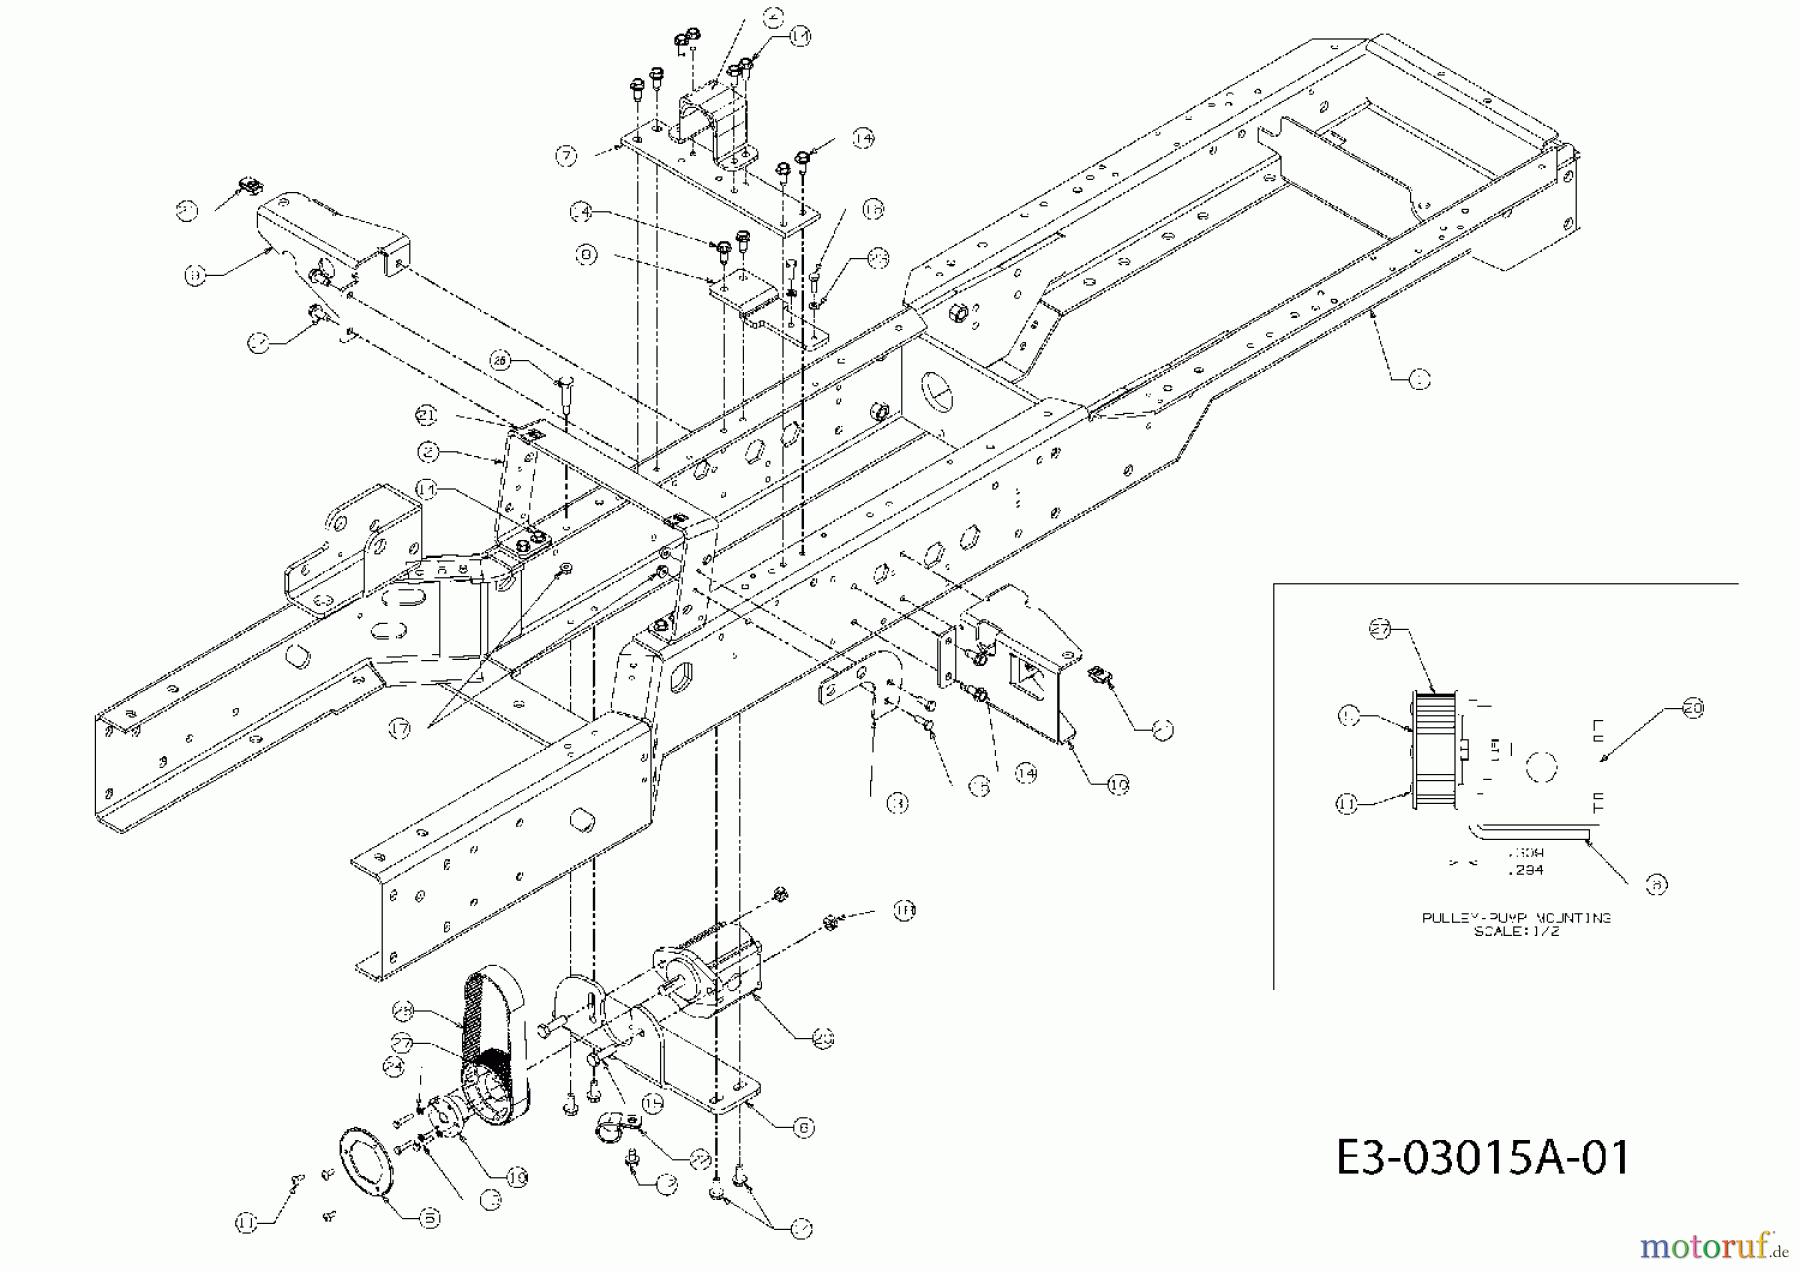  Massey Ferguson Kompakttraktoren MF 22-20 GC 54AE52L-695  (2007) Rahmen